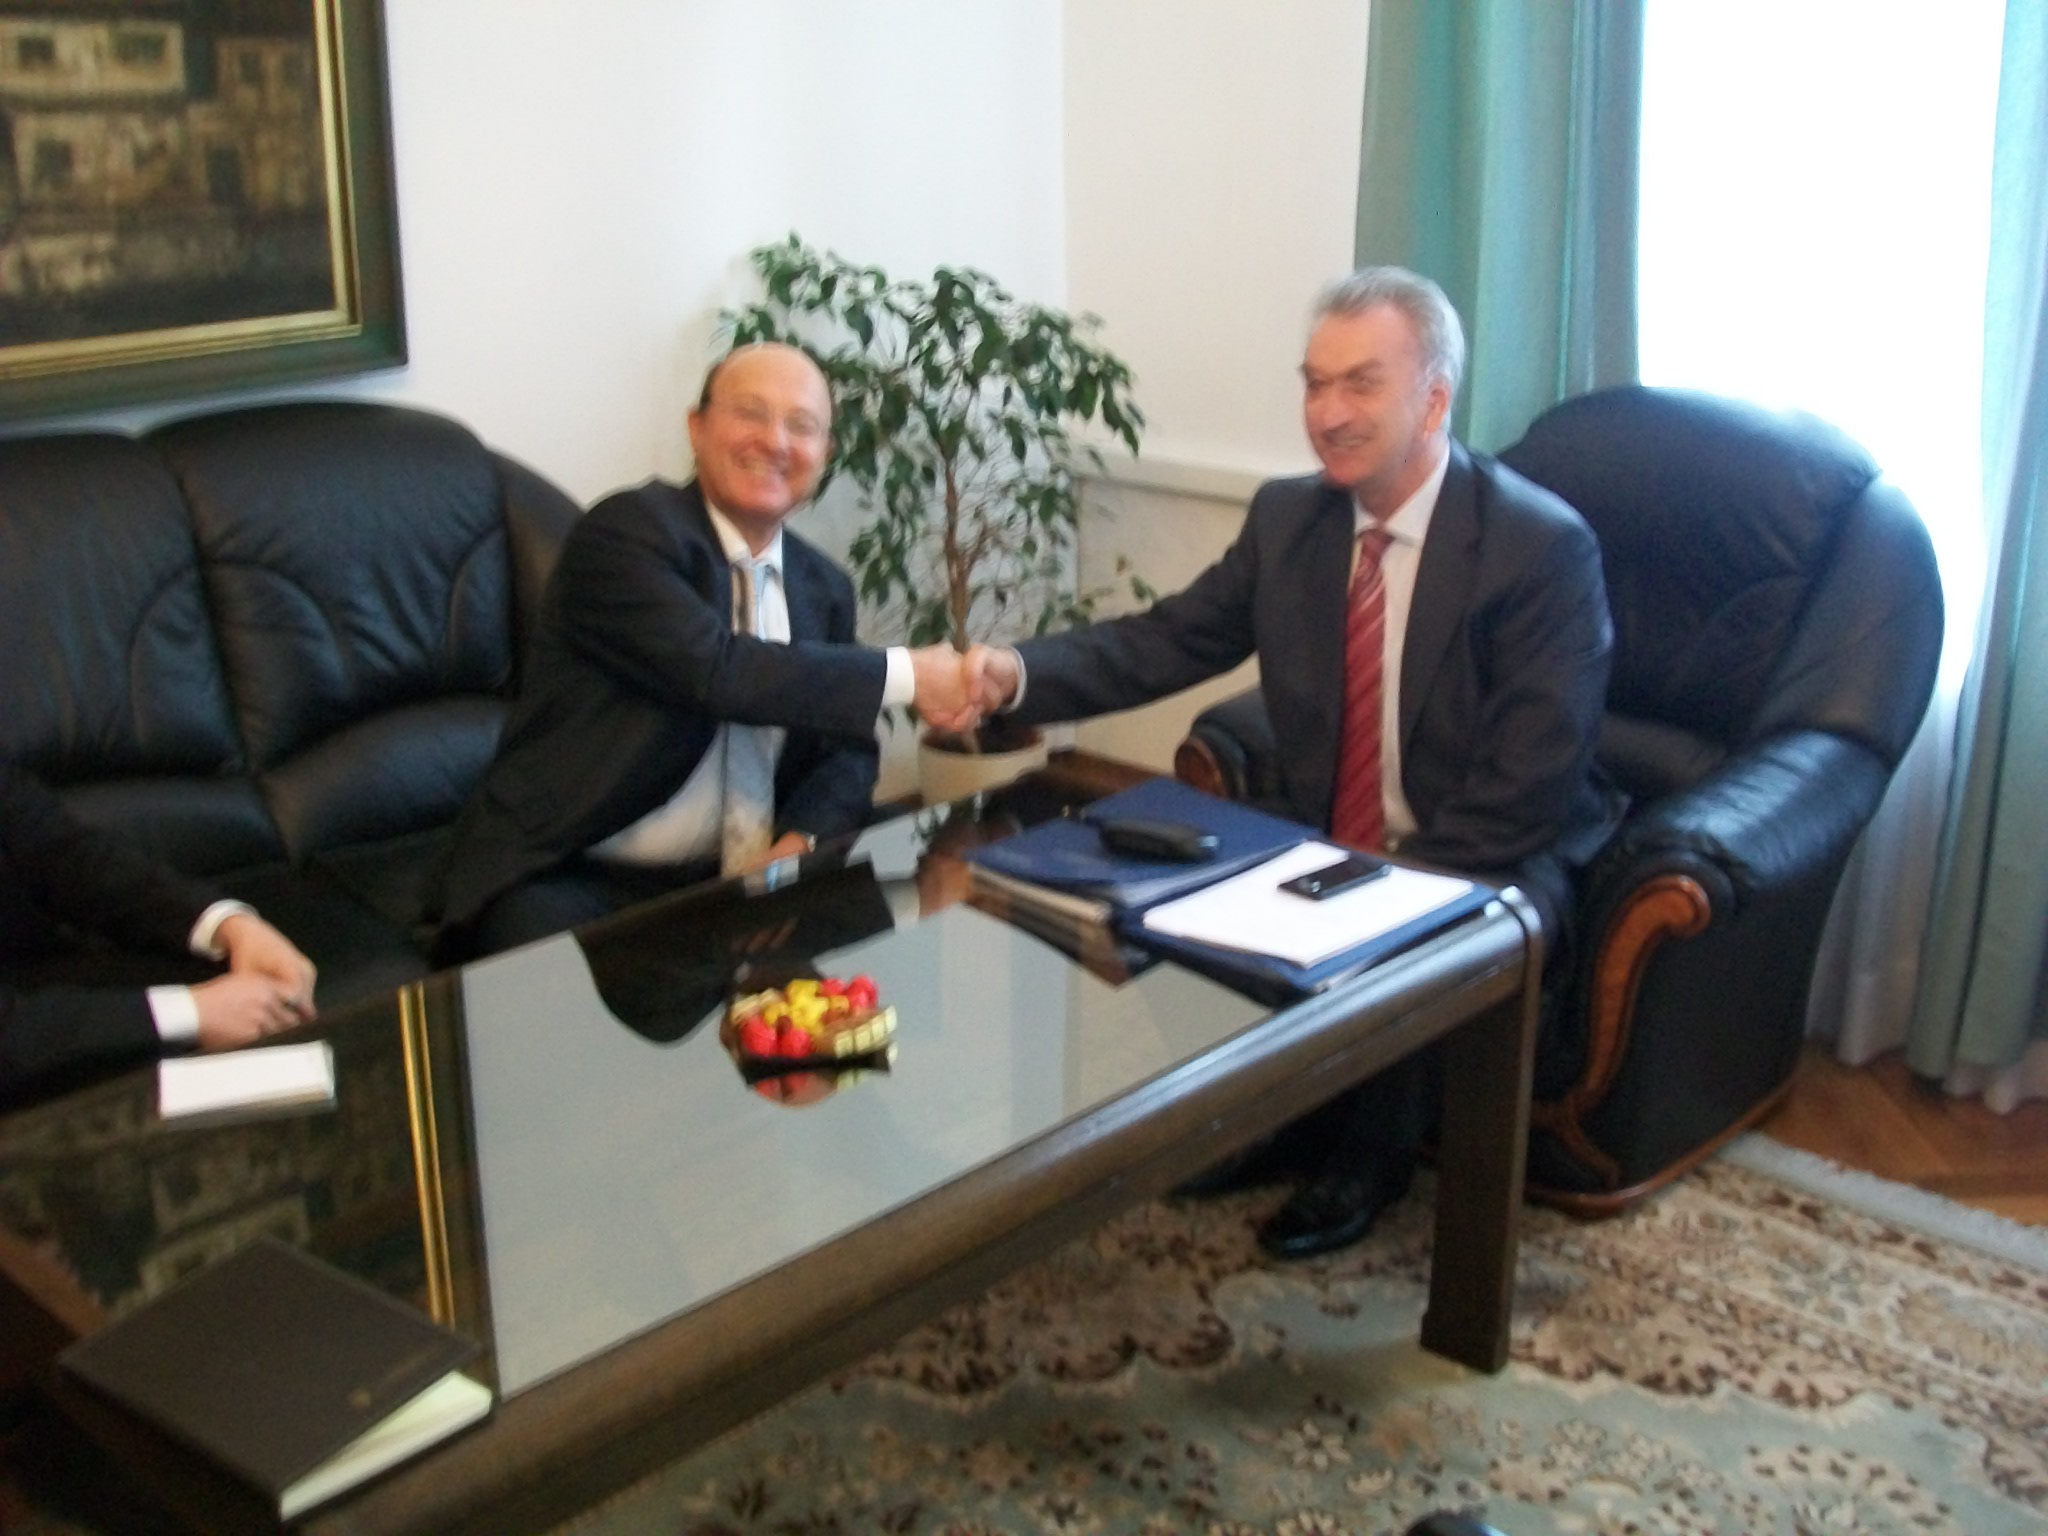 Picture for Састанак министра Мирка Шаровића и нерезидентног амбасадора
Израела у БиХ Дејвида Кохена.
